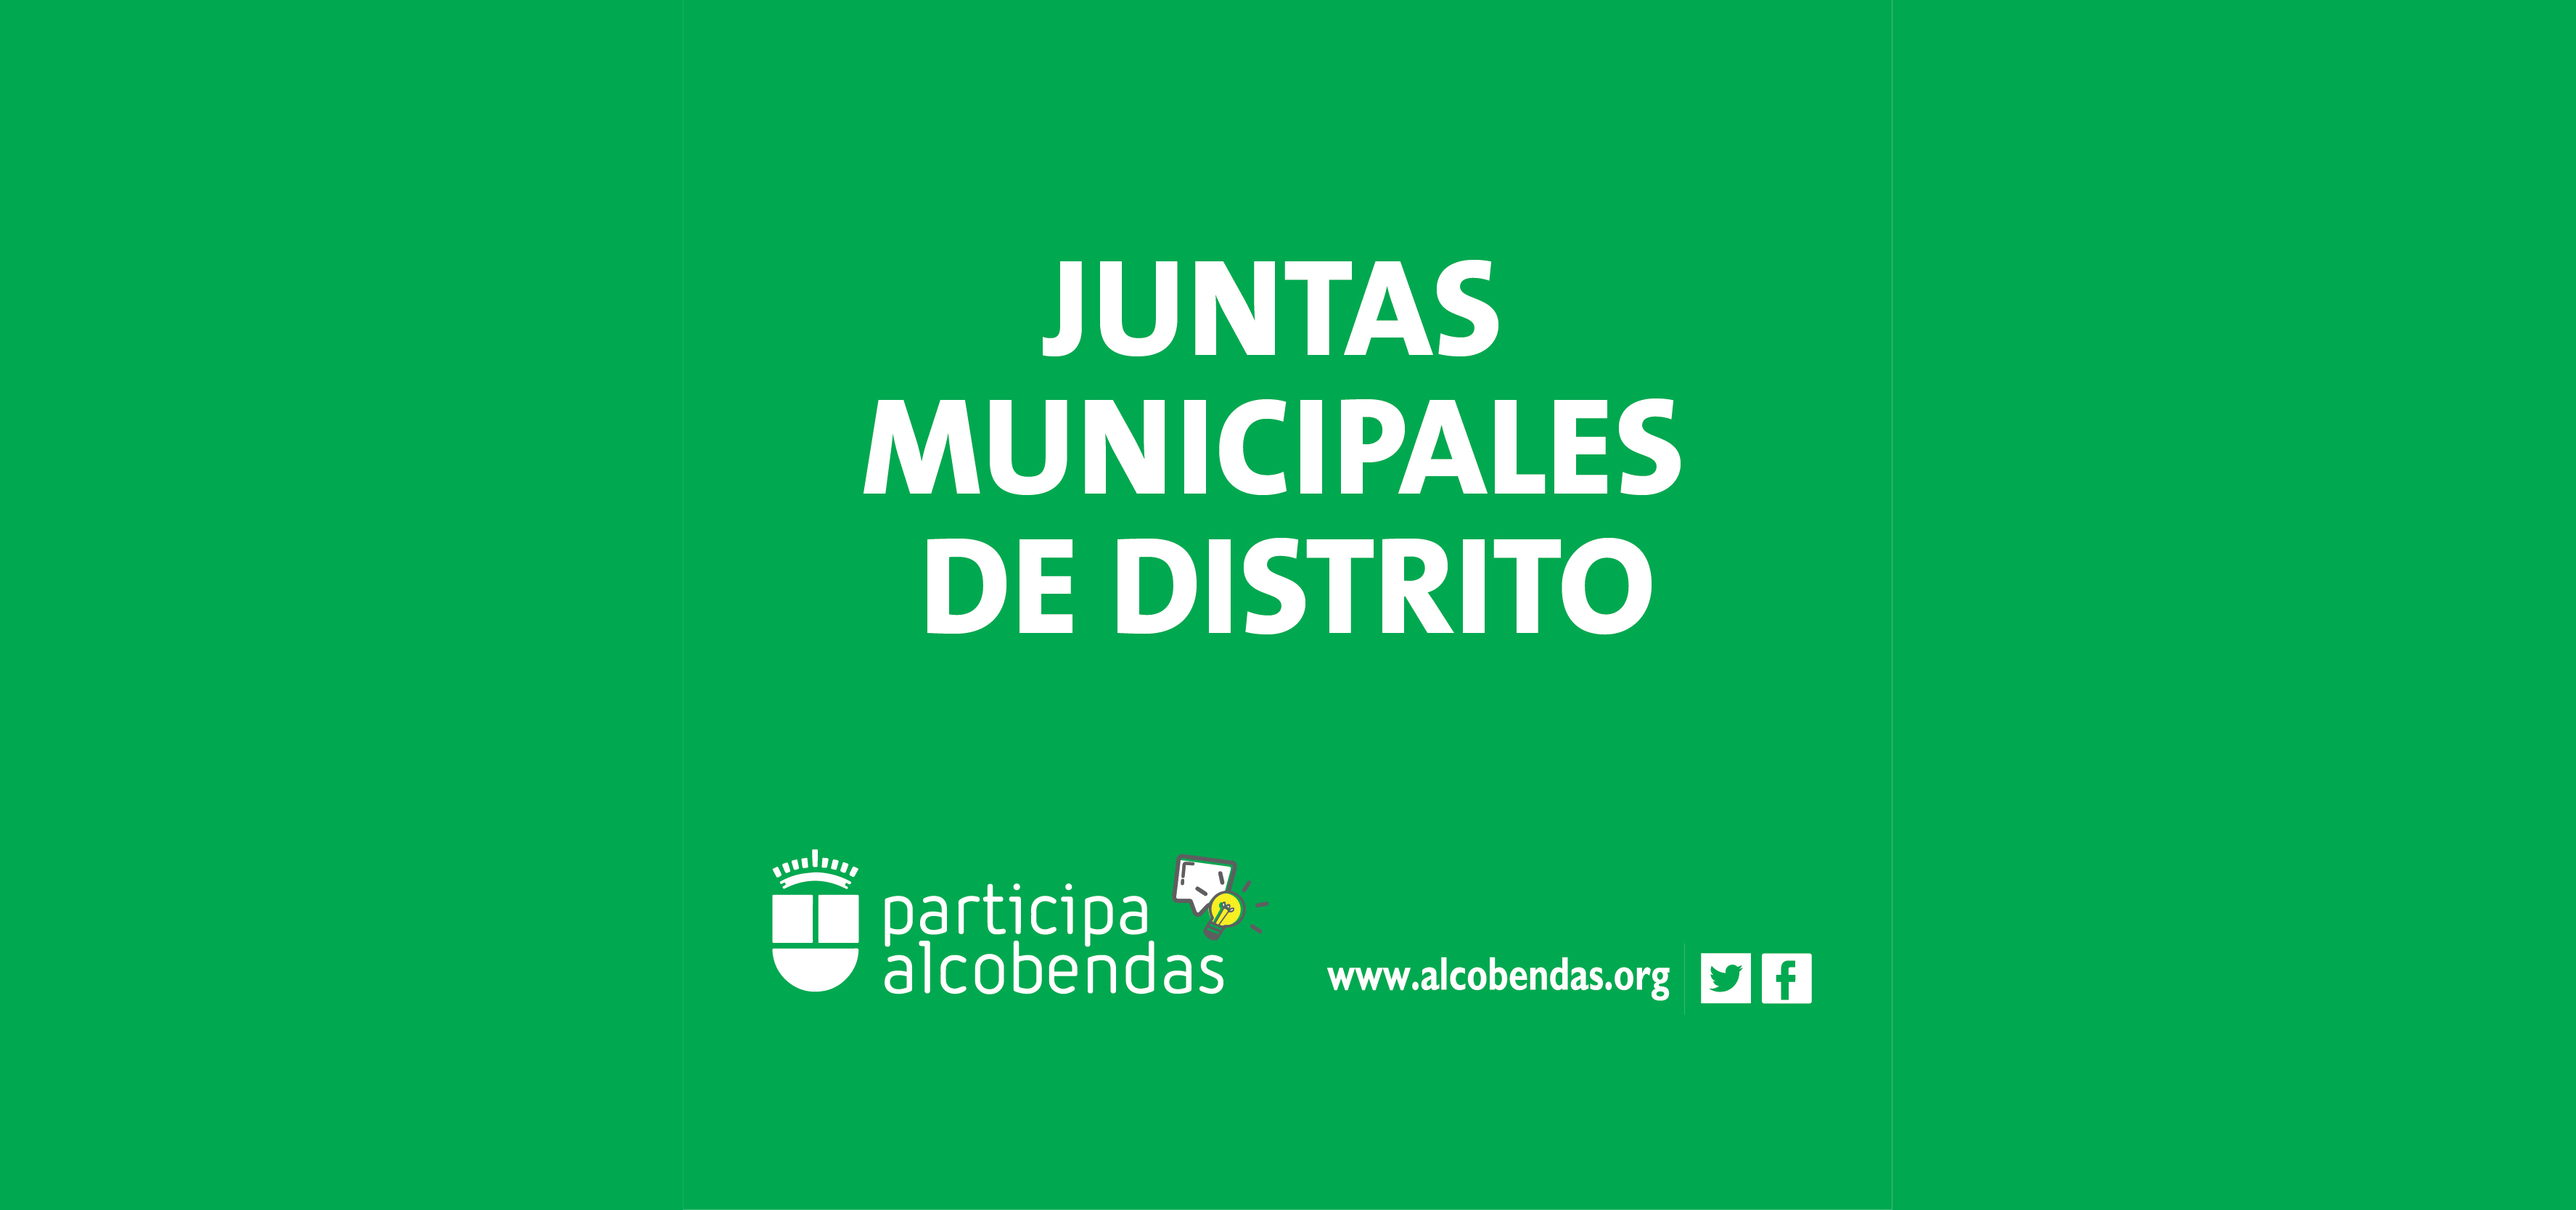 Juntas Municipales de Distrito